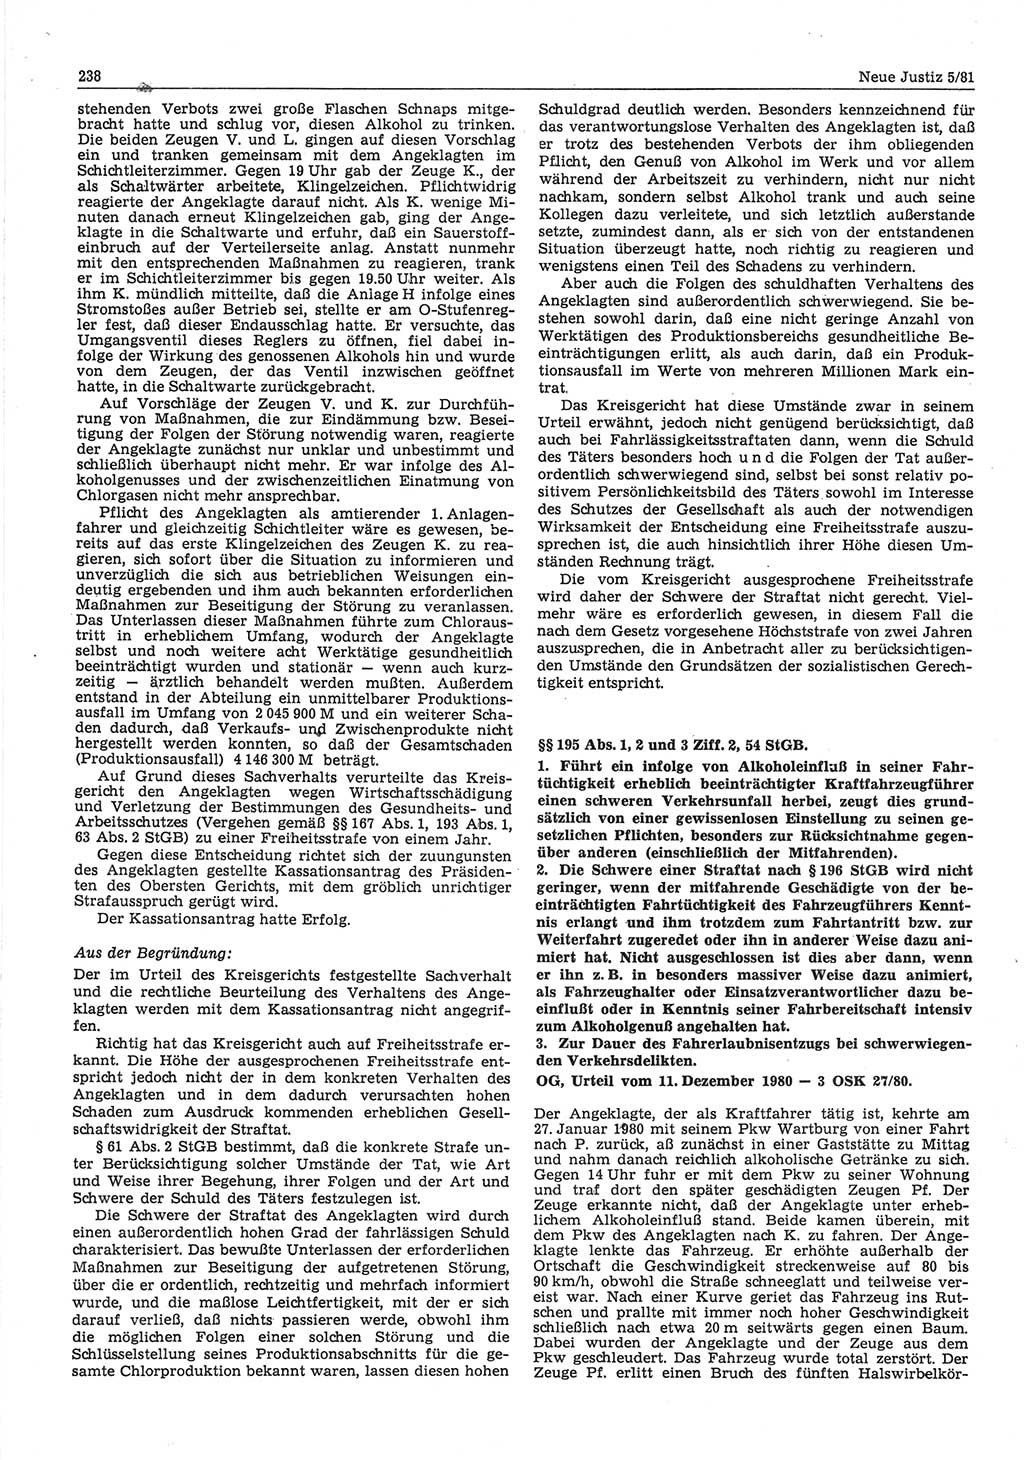 Neue Justiz (NJ), Zeitschrift für sozialistisches Recht und Gesetzlichkeit [Deutsche Demokratische Republik (DDR)], 35. Jahrgang 1981, Seite 238 (NJ DDR 1981, S. 238)